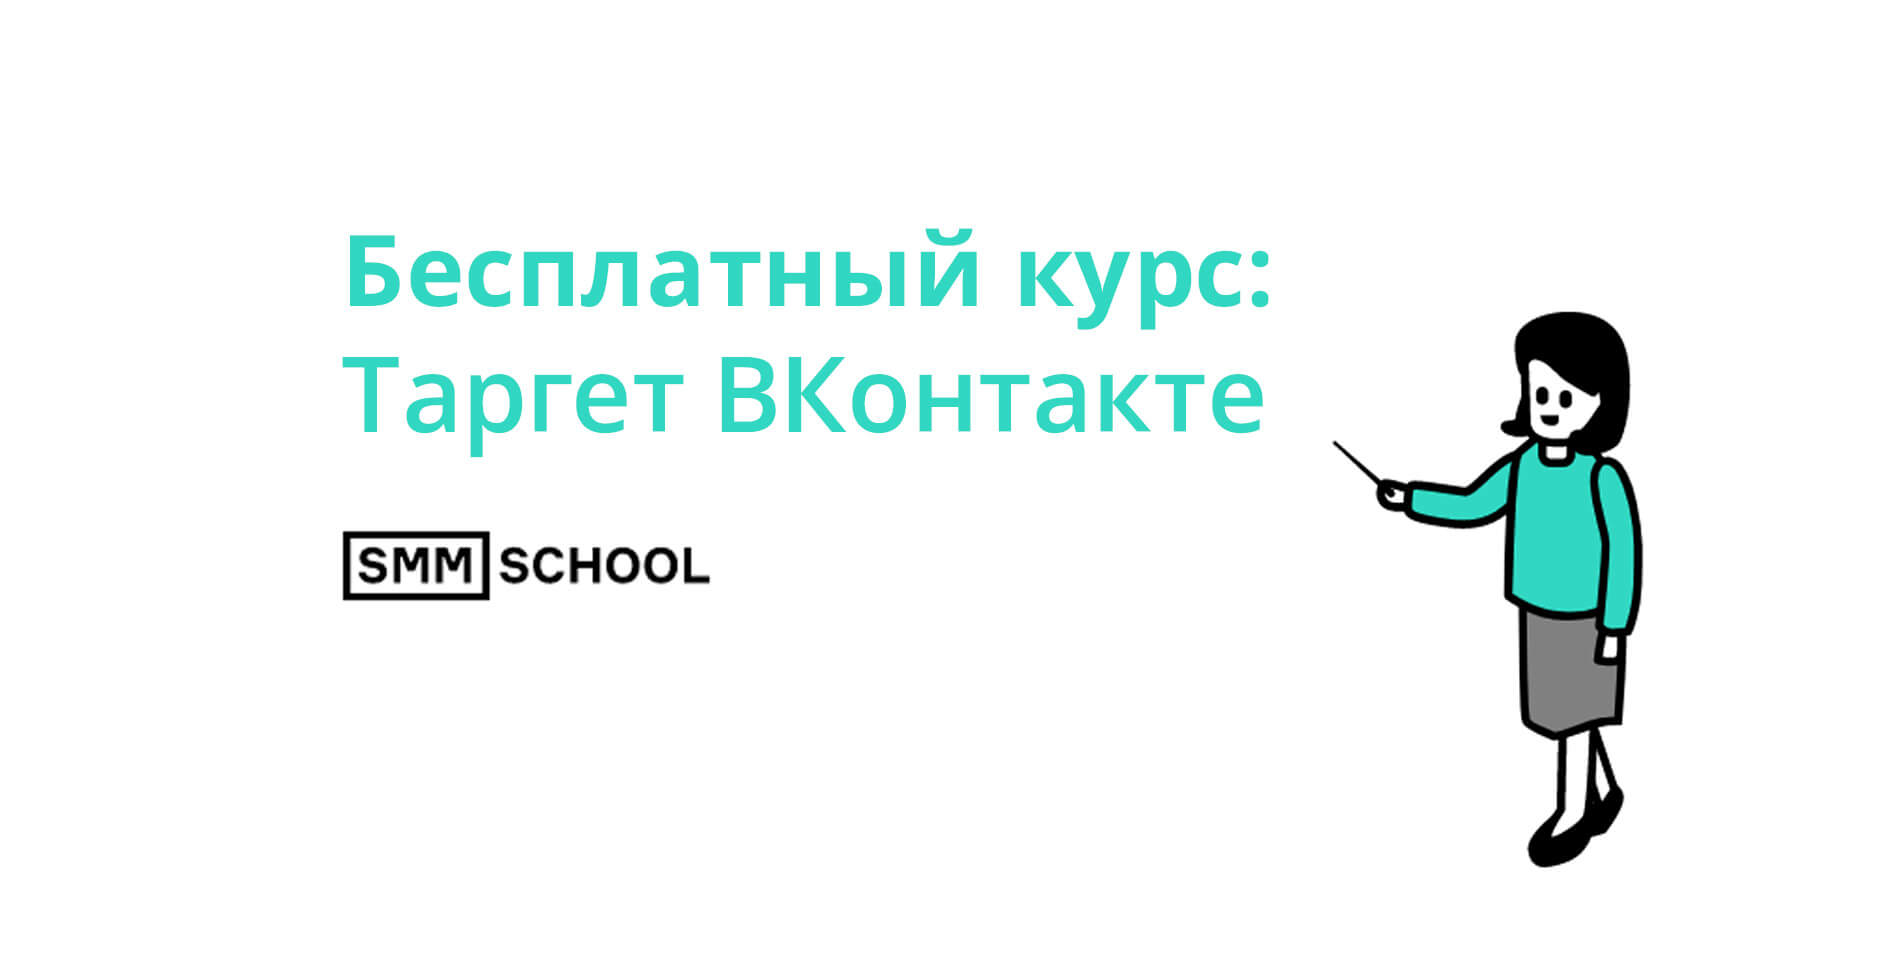 SMM.school — Бесплатный курс: Таргет Вконтакте